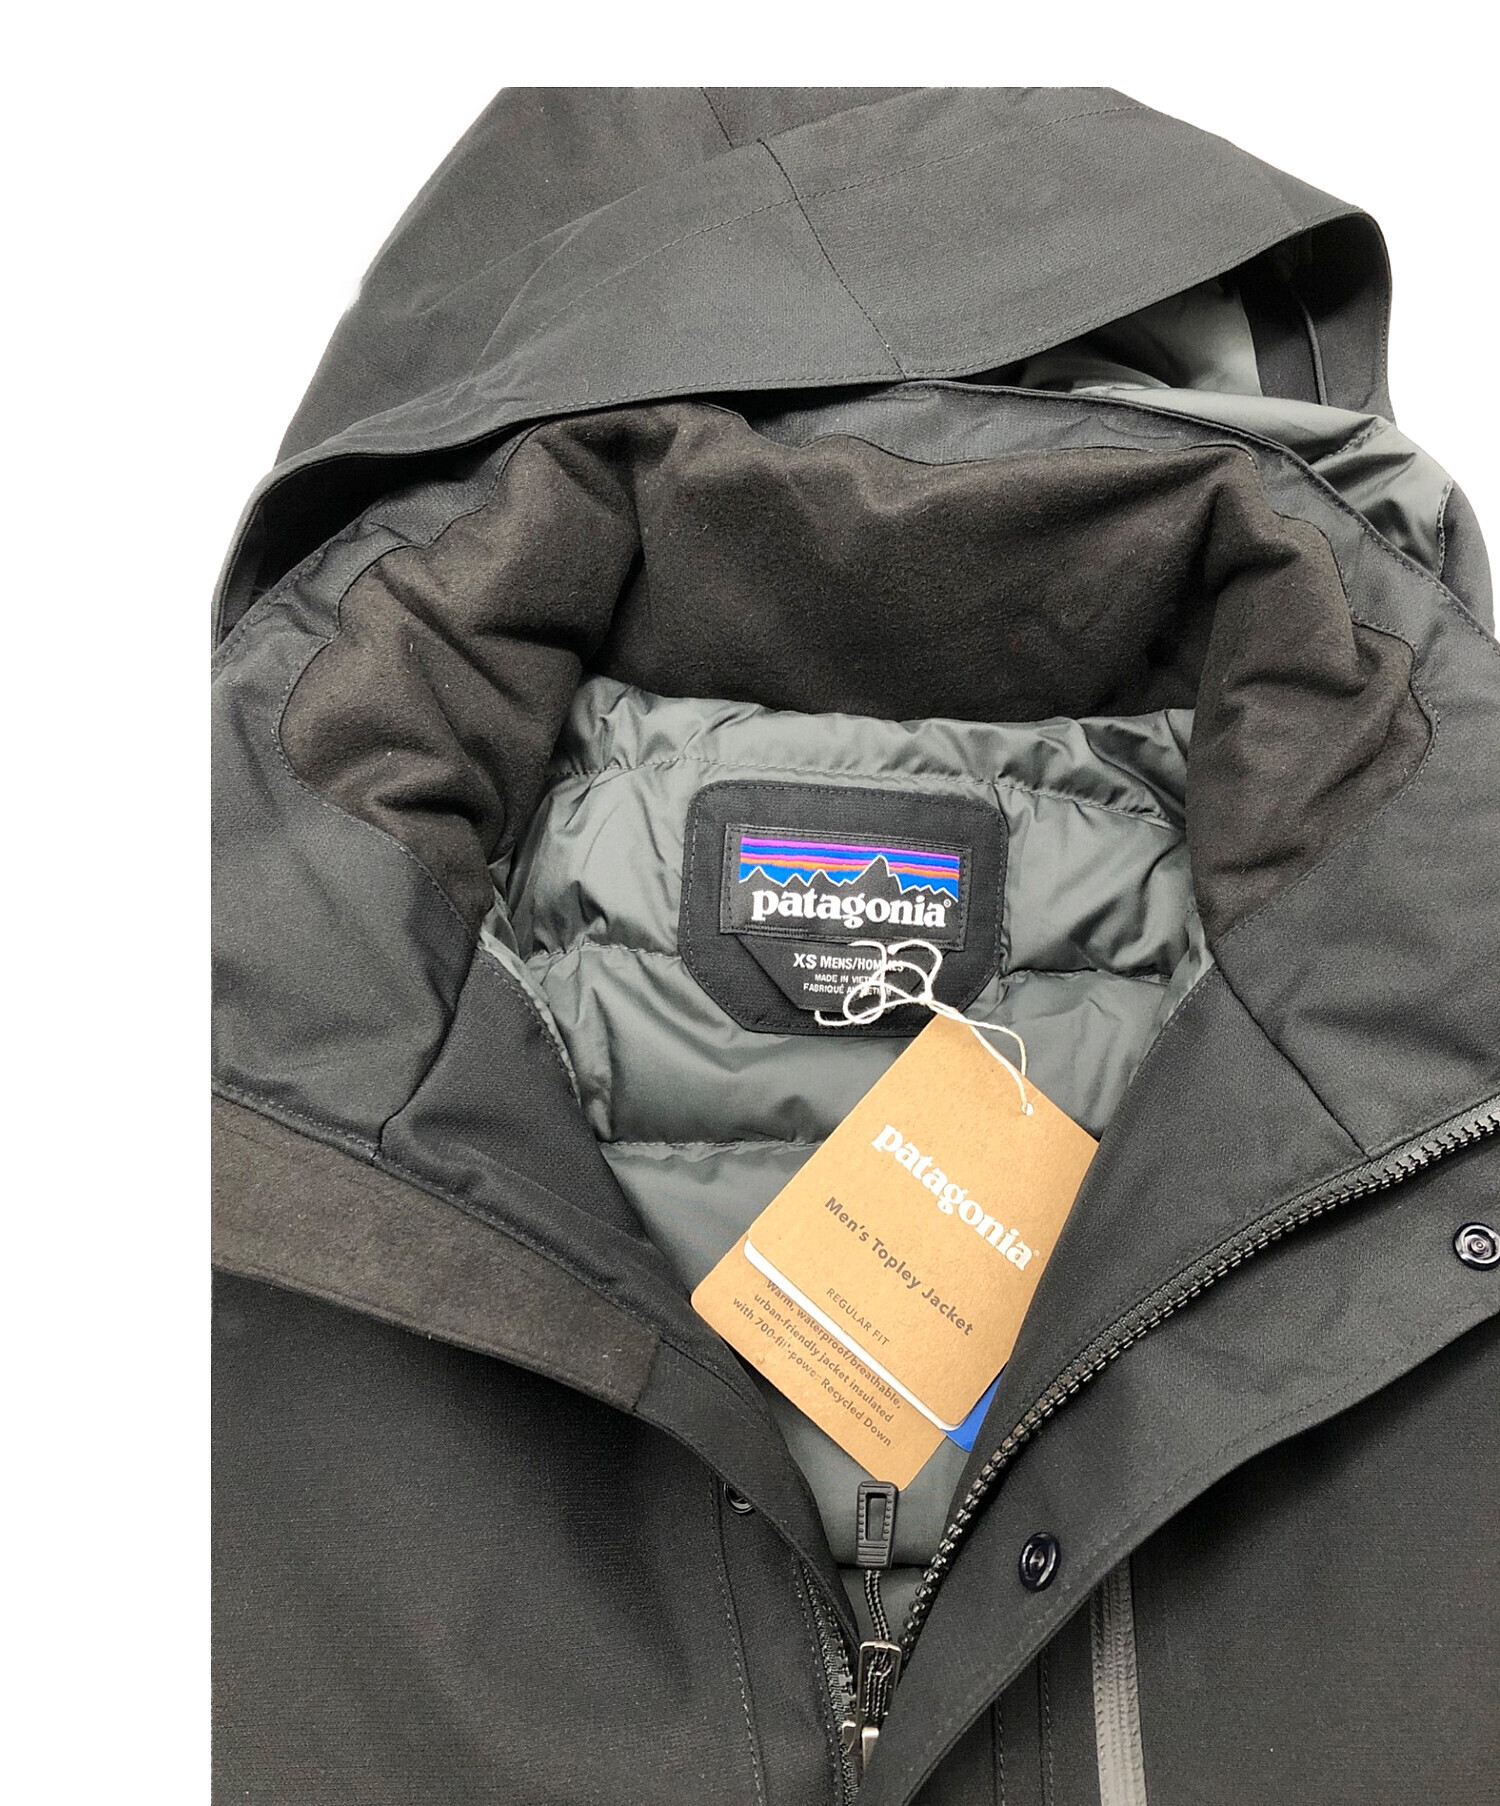 Patagonia (パタゴニア) M's Topley Jacket/メンズトップリージャケット ブラック サイズ:XS